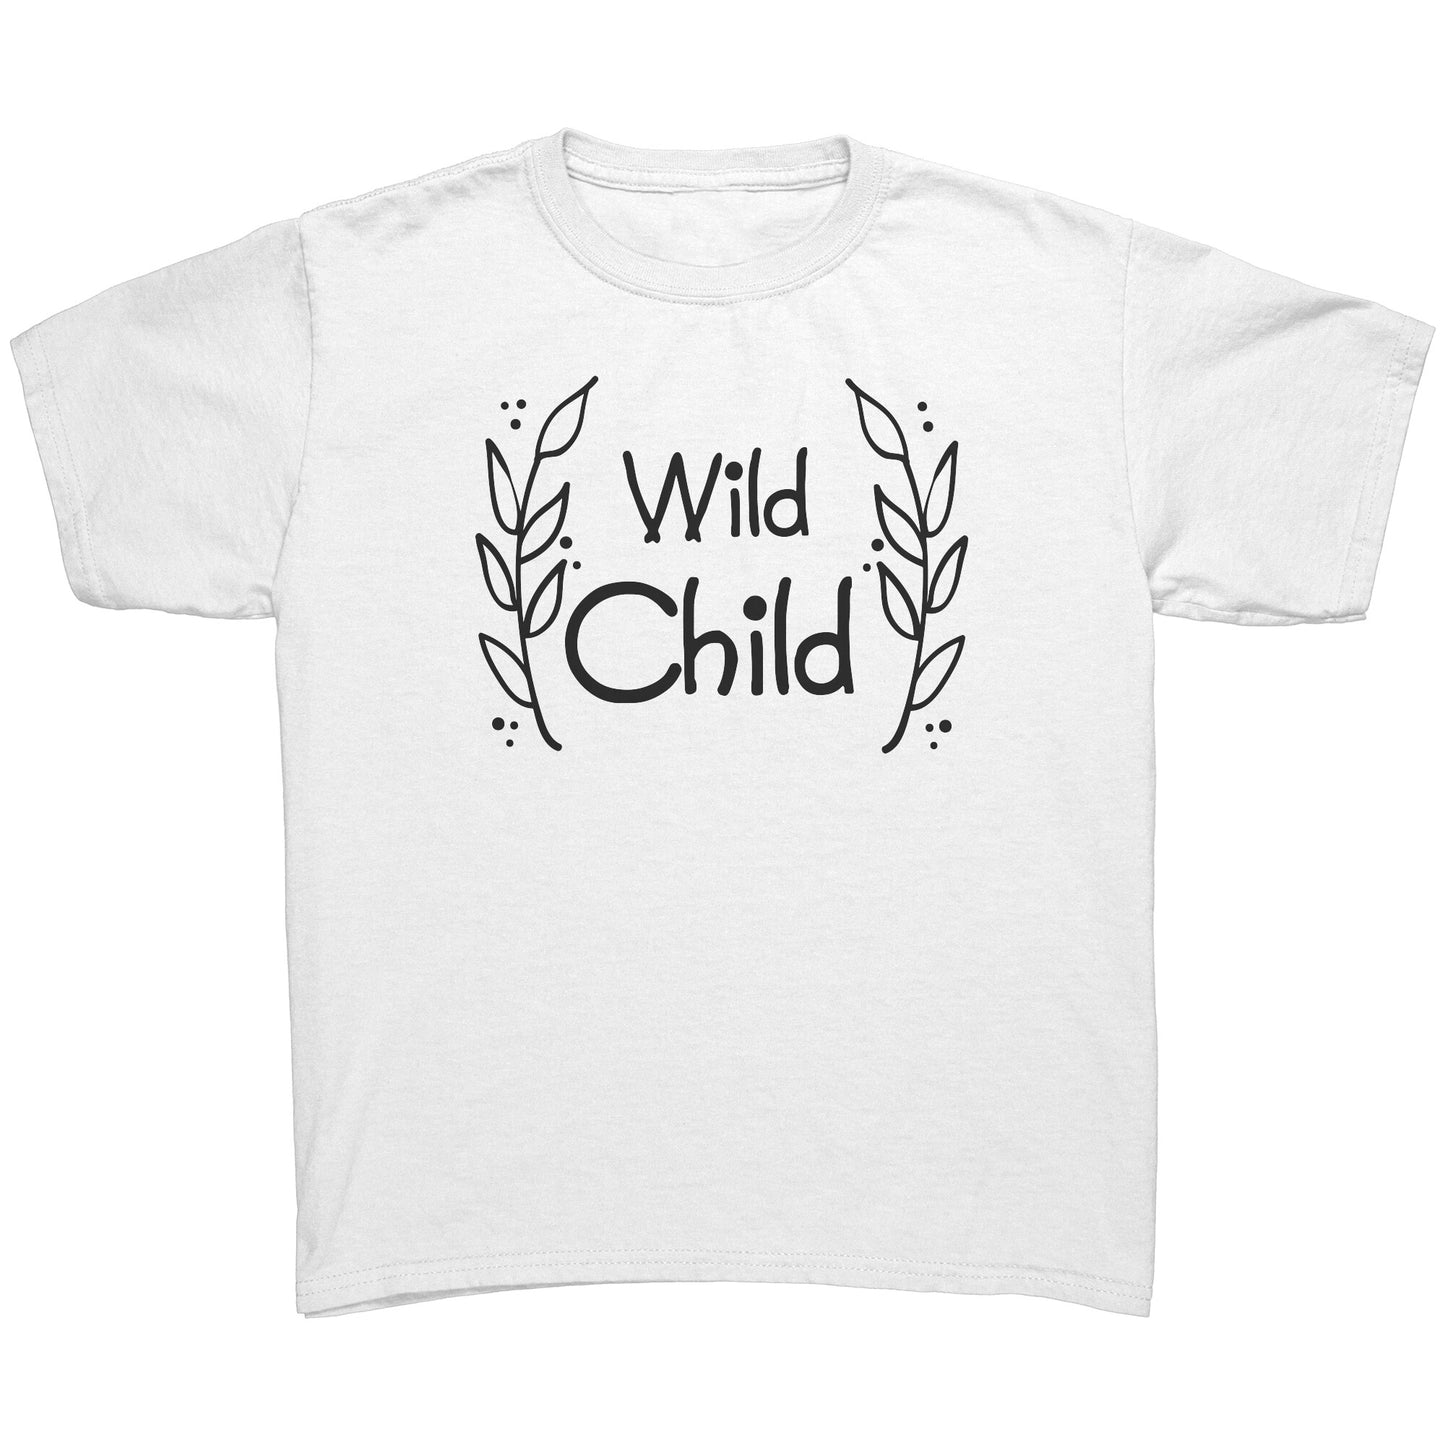 Wild Child Youth Shirt